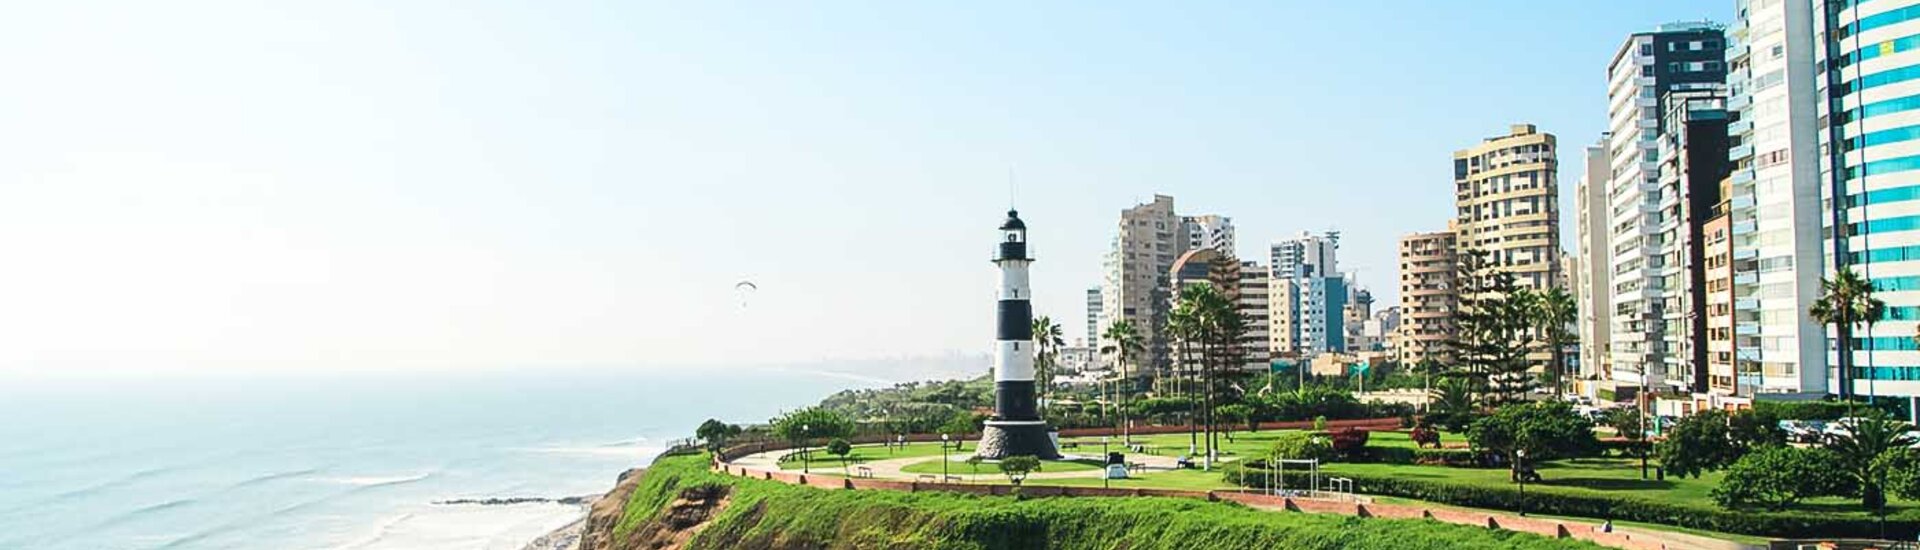 Stadtteil Miraflores von Lima